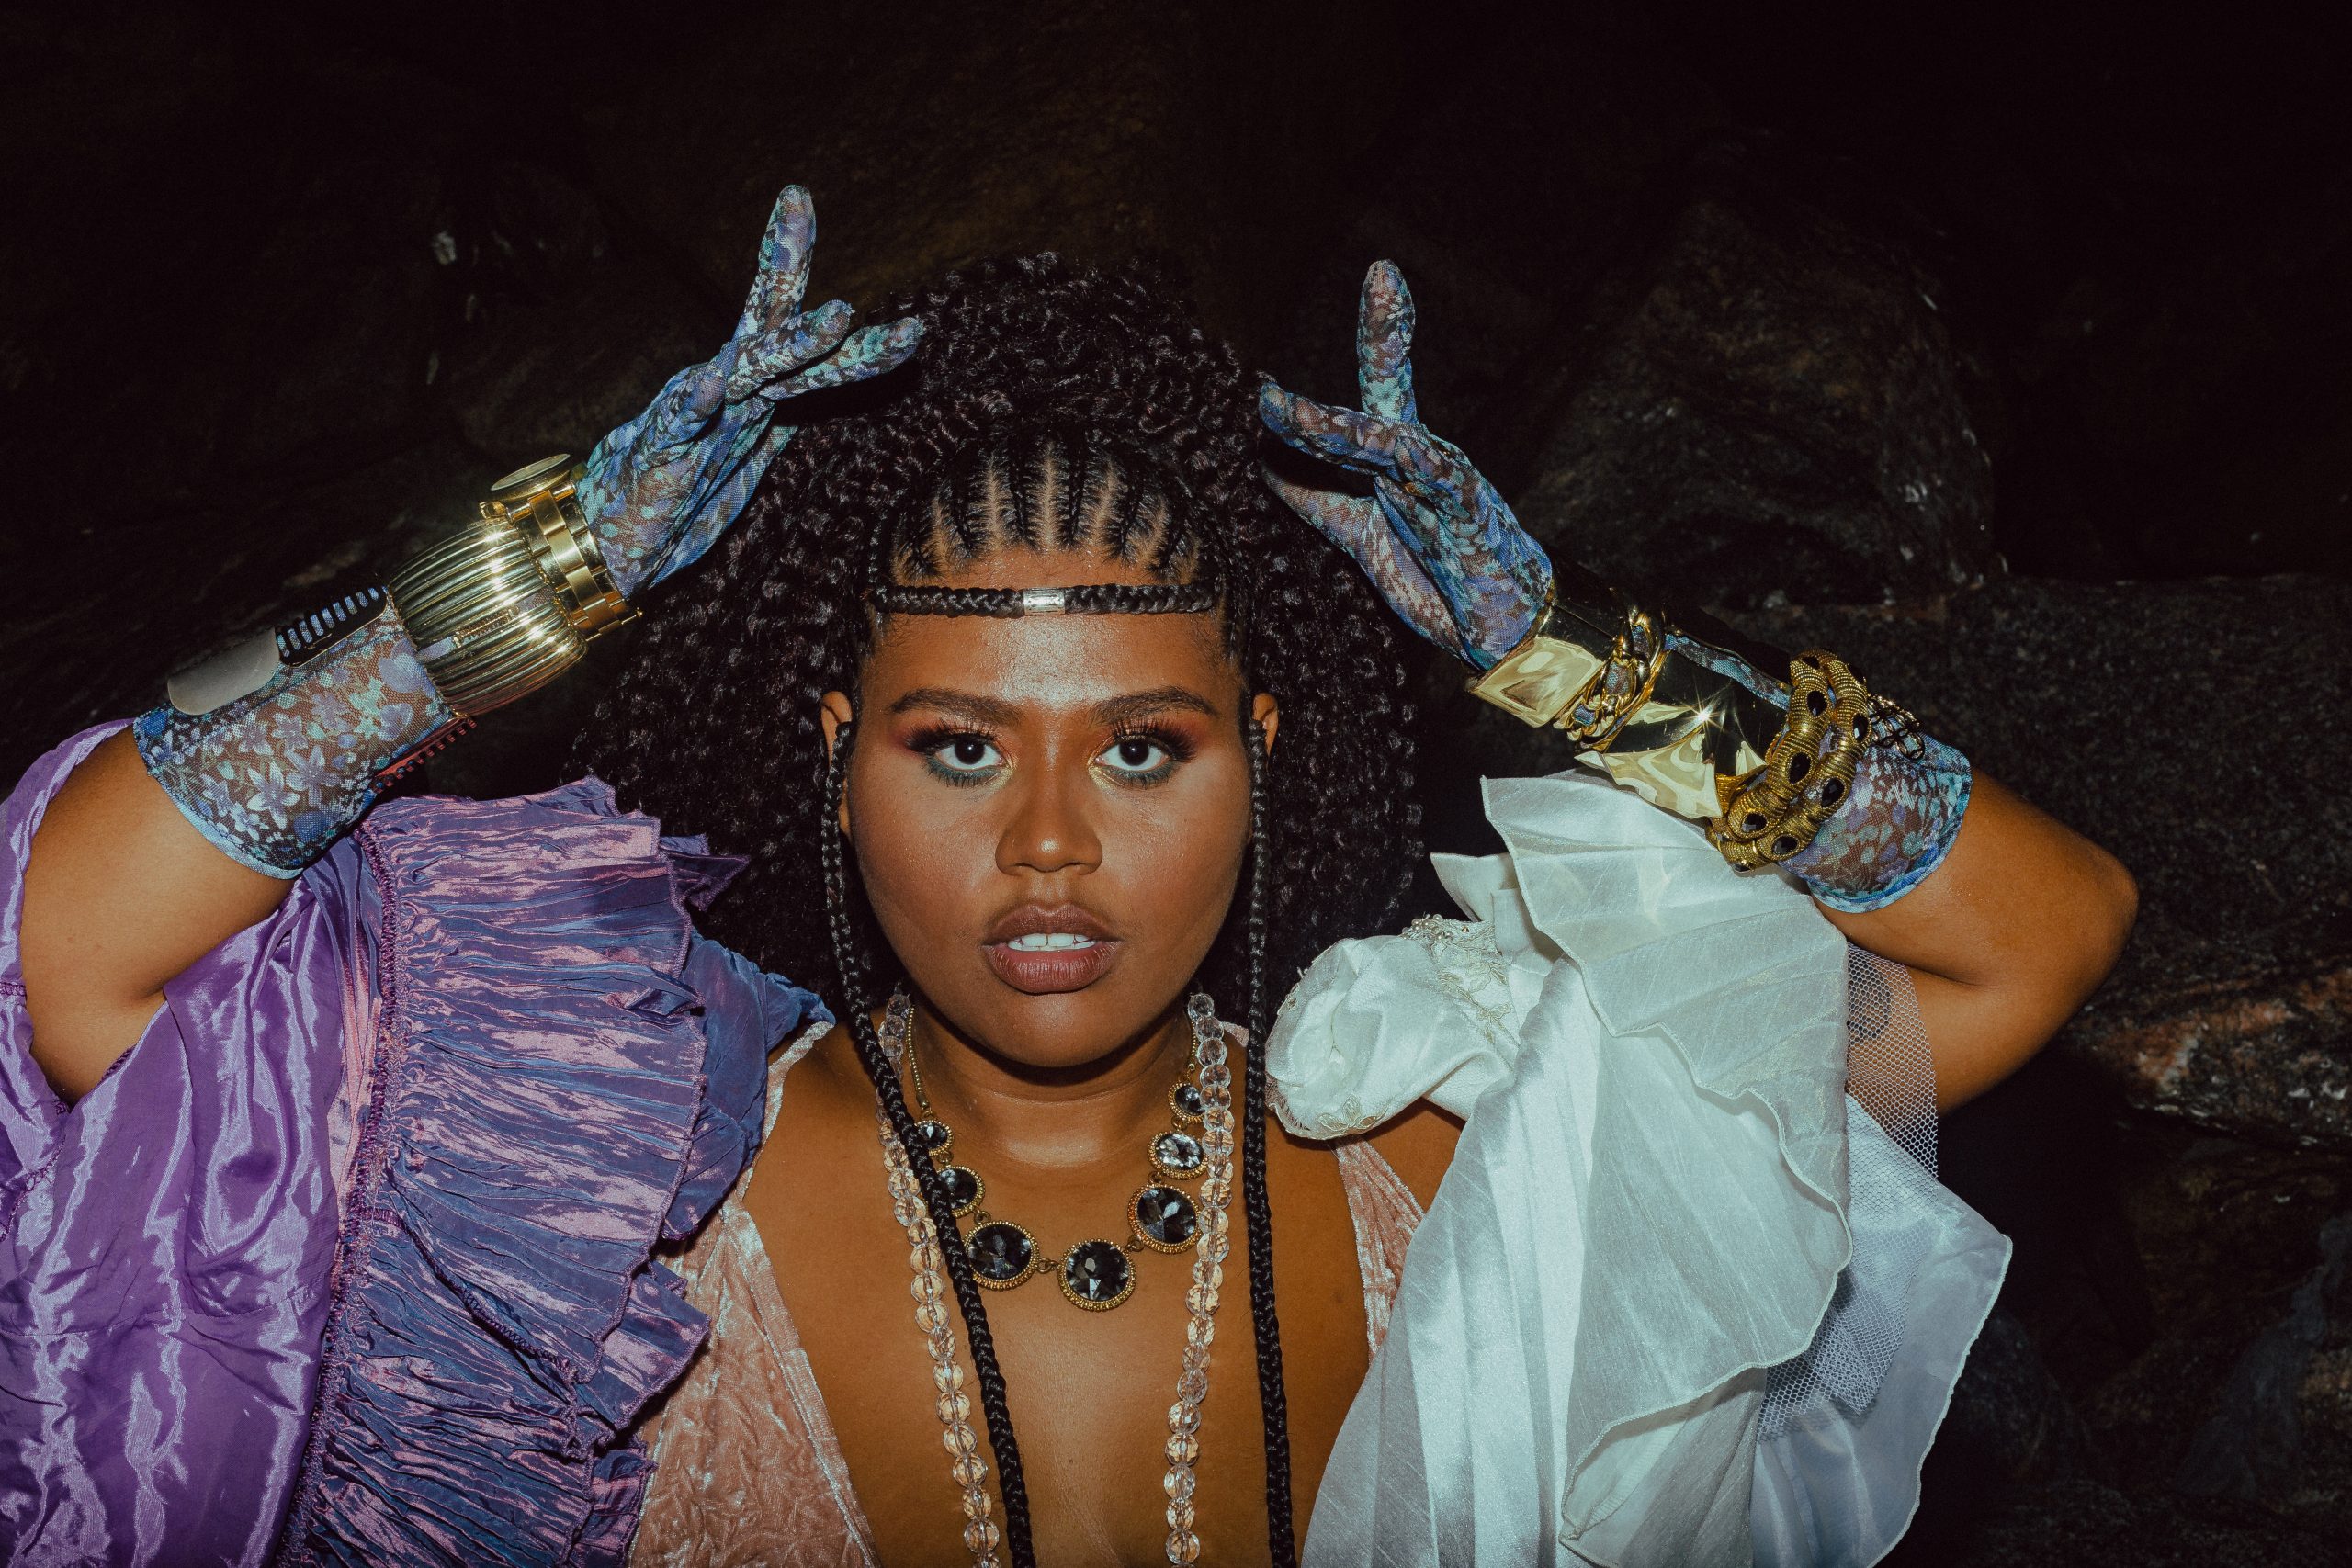 Programação online Fecomércio: na imagem, a cantora Luiza Nobel olha para a foto com as mãos próximas à cabeça. Ela tem a pele negra e o cabelo preto com tranças, está com uma maquiagem artística, luvas azuis e um vestido azul com violeta.